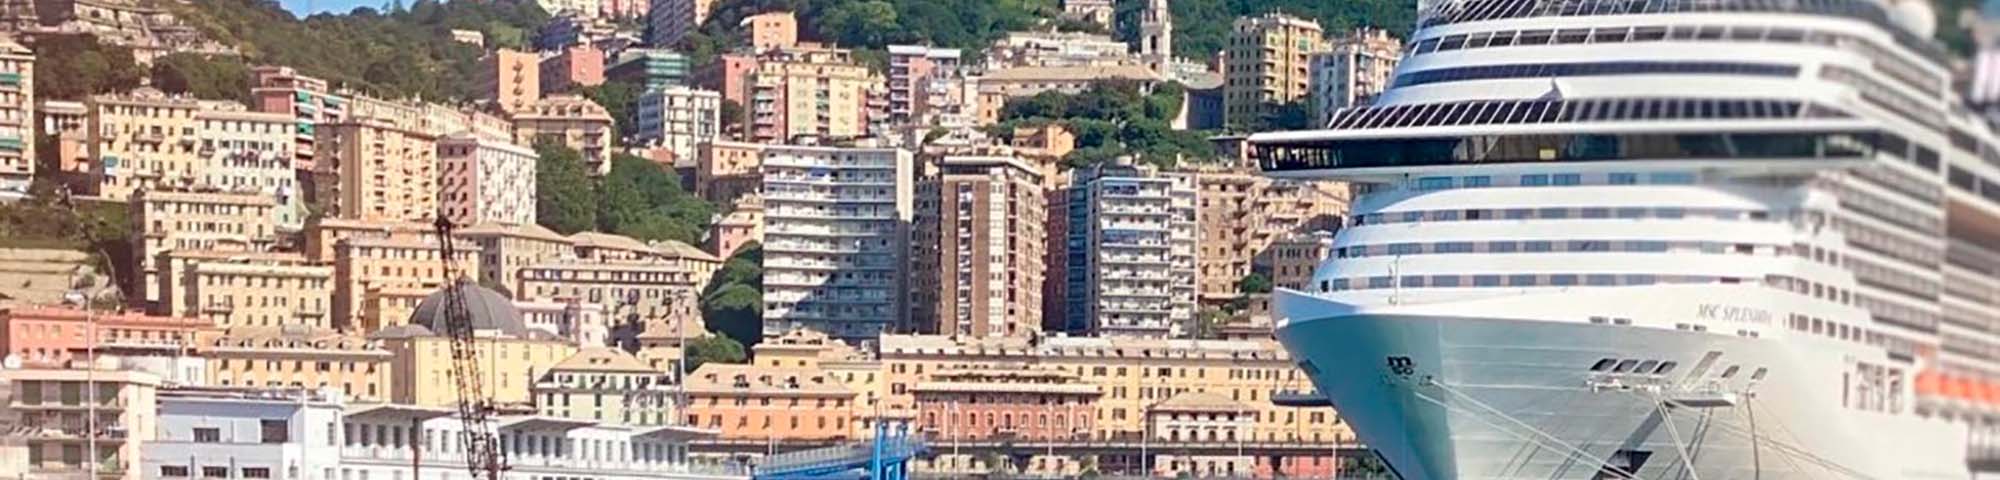 Immagine del porto di arrivo Genova per la rotta traghetto Porto Torres - Genova